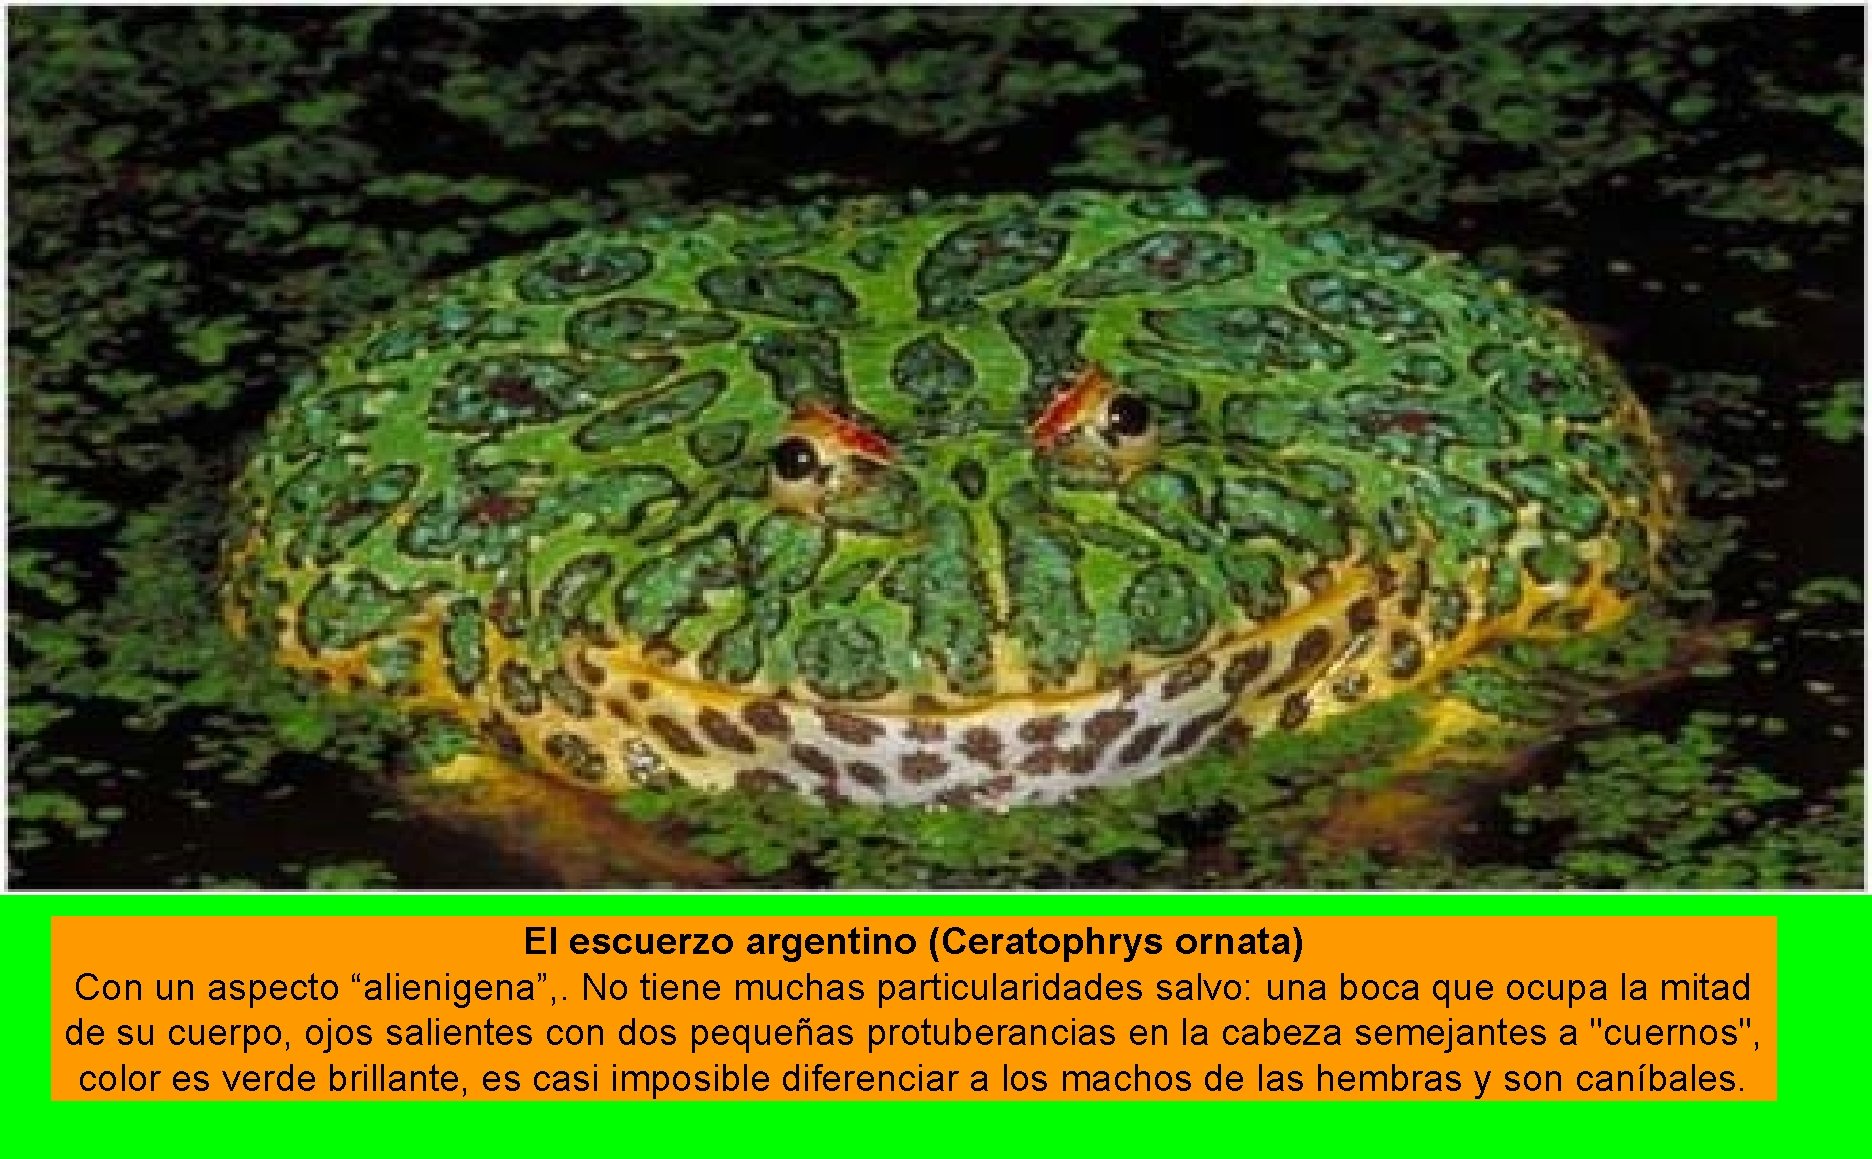 El escuerzo argentino (Ceratophrys ornata) Con un aspecto “alienigena”, . No tiene muchas particularidades